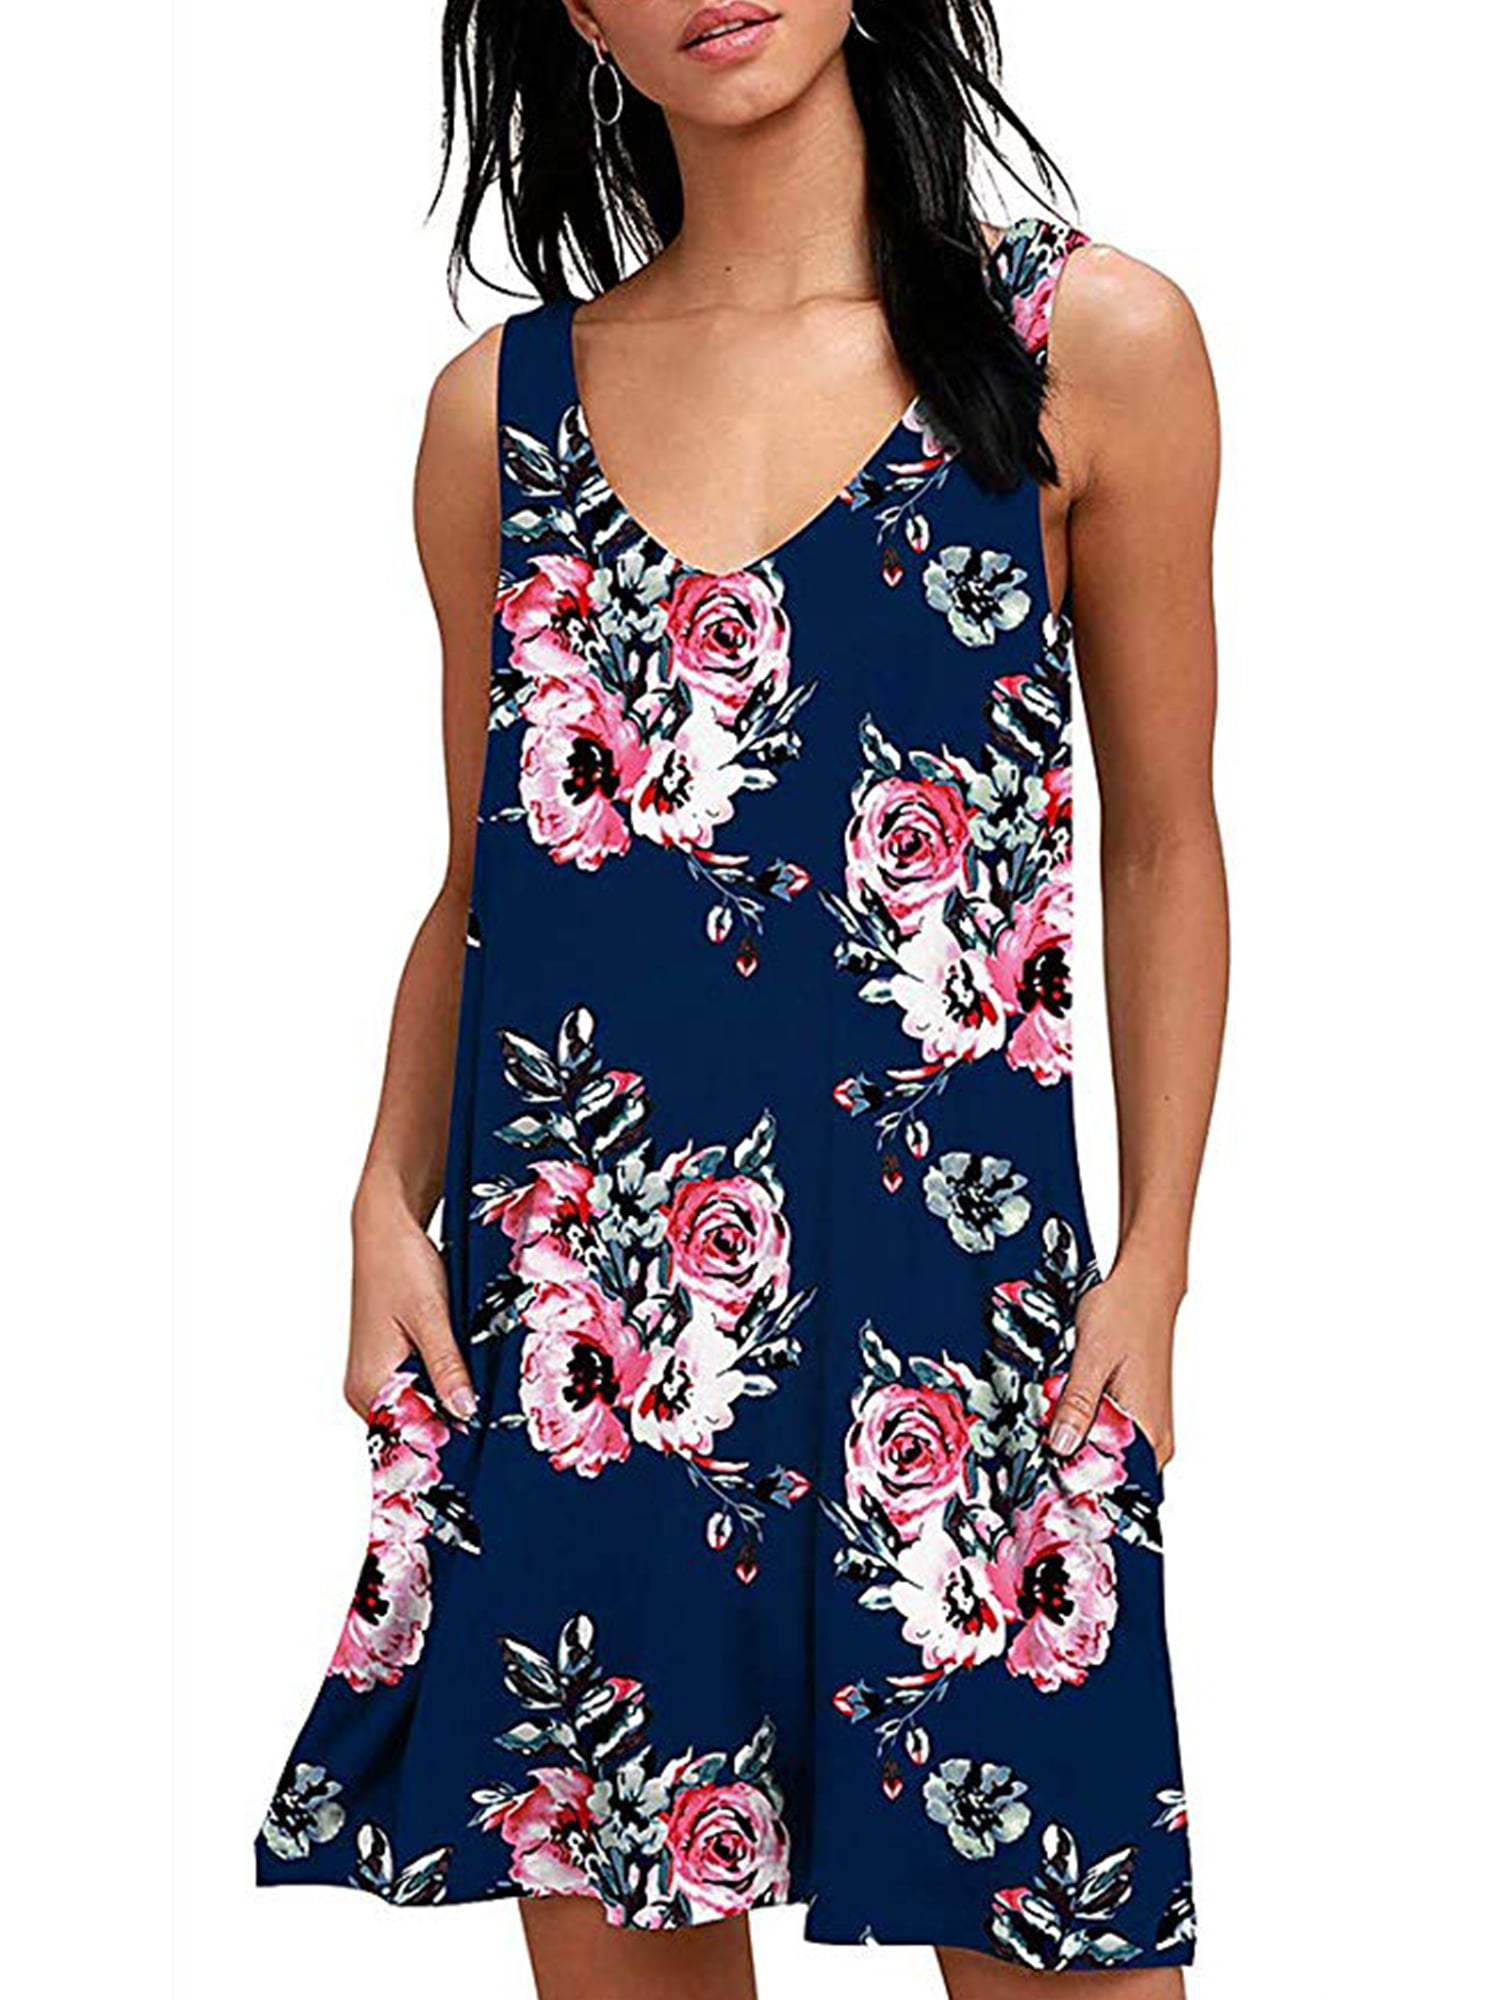 GOSOPIN Womens Summer Tank V Neck Sleeveless A-Line Mini Dress Button Down Shirt Dress S-XL